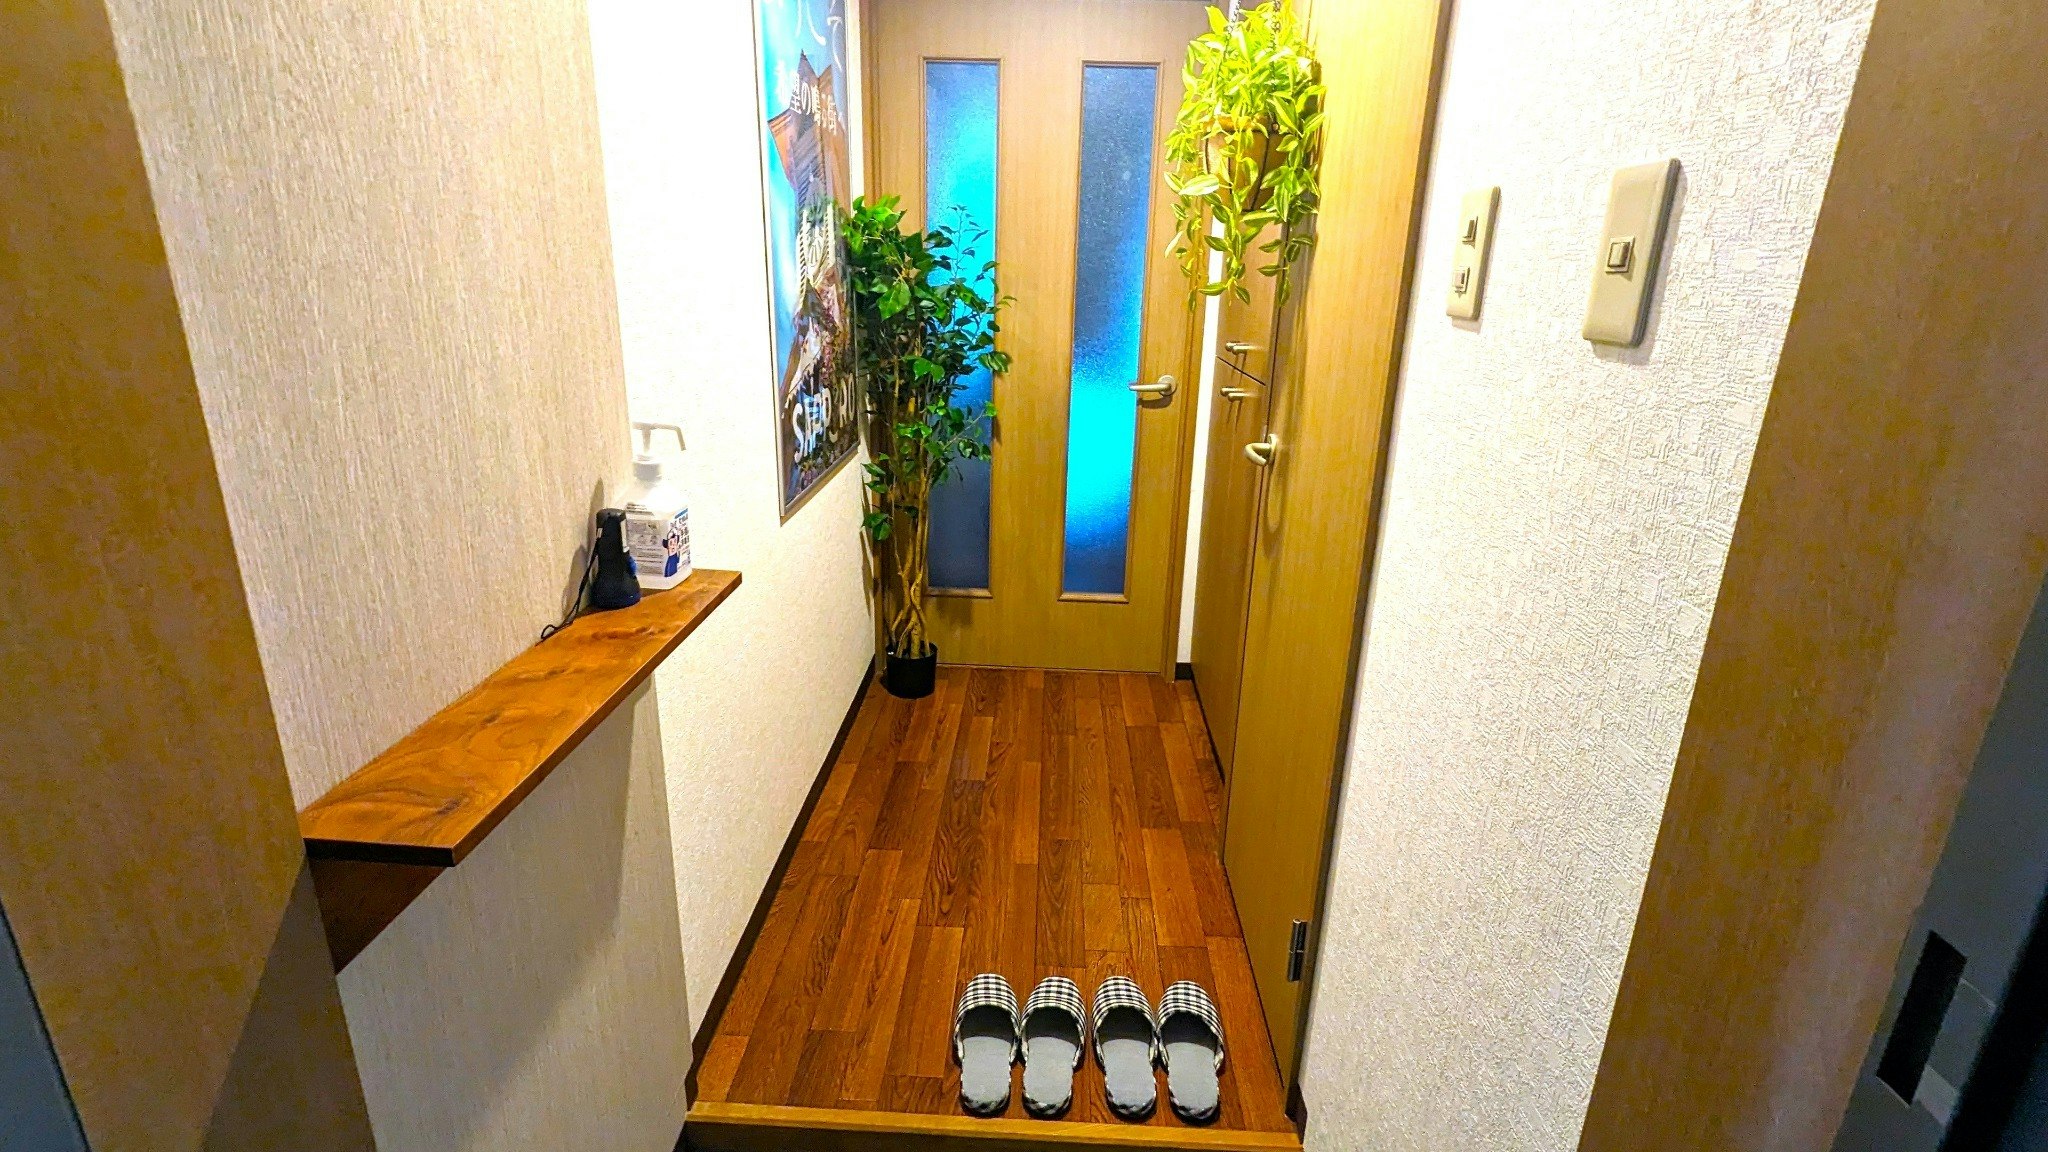 ダブルベッドタイプのプライベートルーム 札幌市内や新千歳空港までのアクセス良し